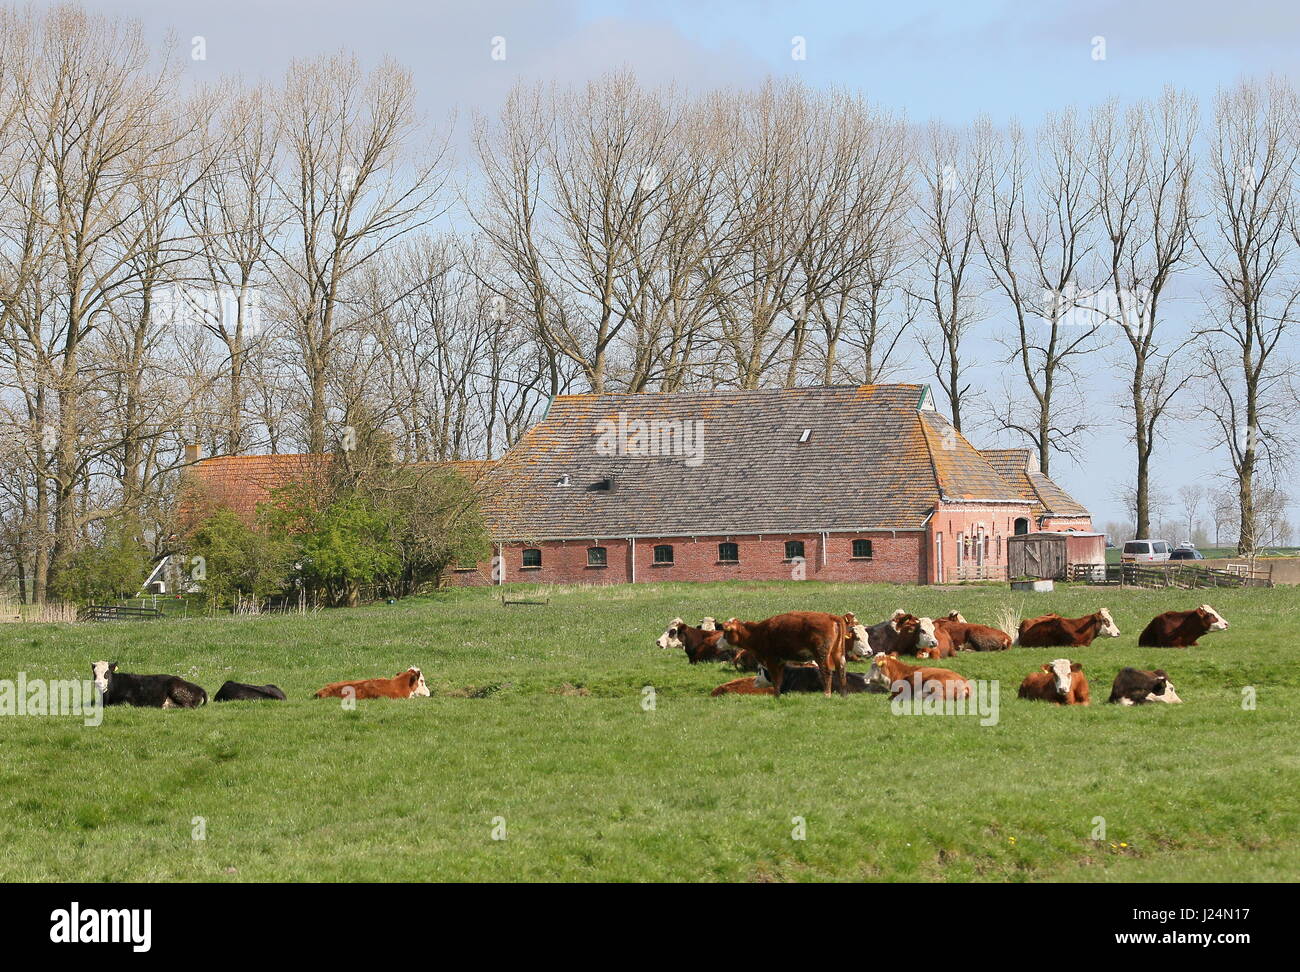 Rinderherde Blaarkoppen ("Blister-Kopf"), eine alte holländische Rasse, vor allem im Norden der Niederlande Groningen Provinz gefunden. Hier bei Leegkerk Dorf Stockfoto